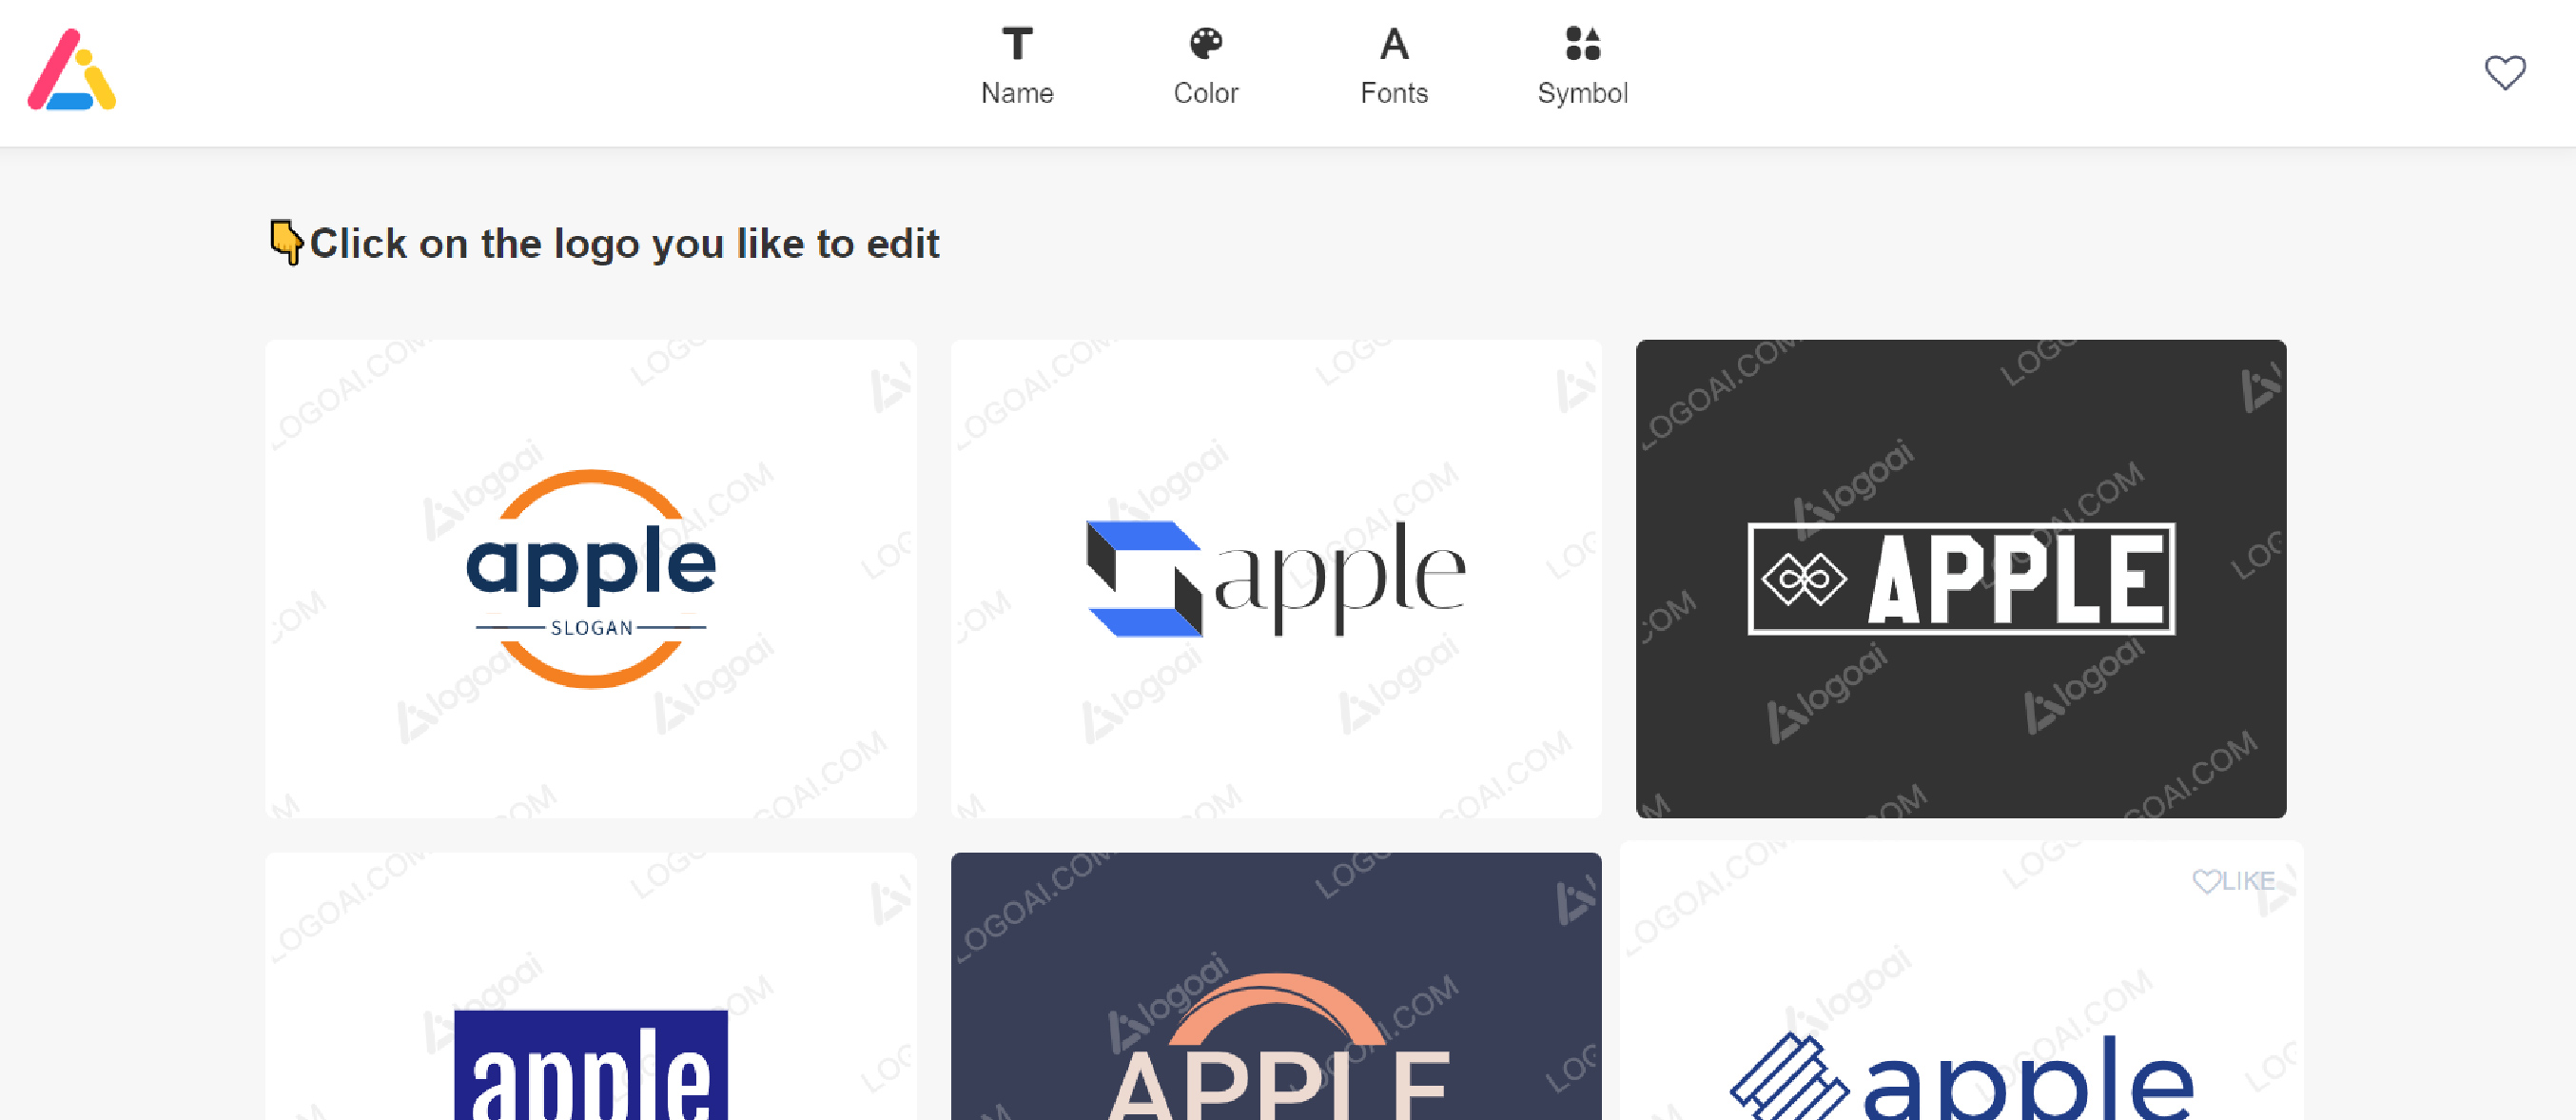 صفحه نمونه لوگوهای پیشنهادی طراحی شده توسط هوش مصنوعی